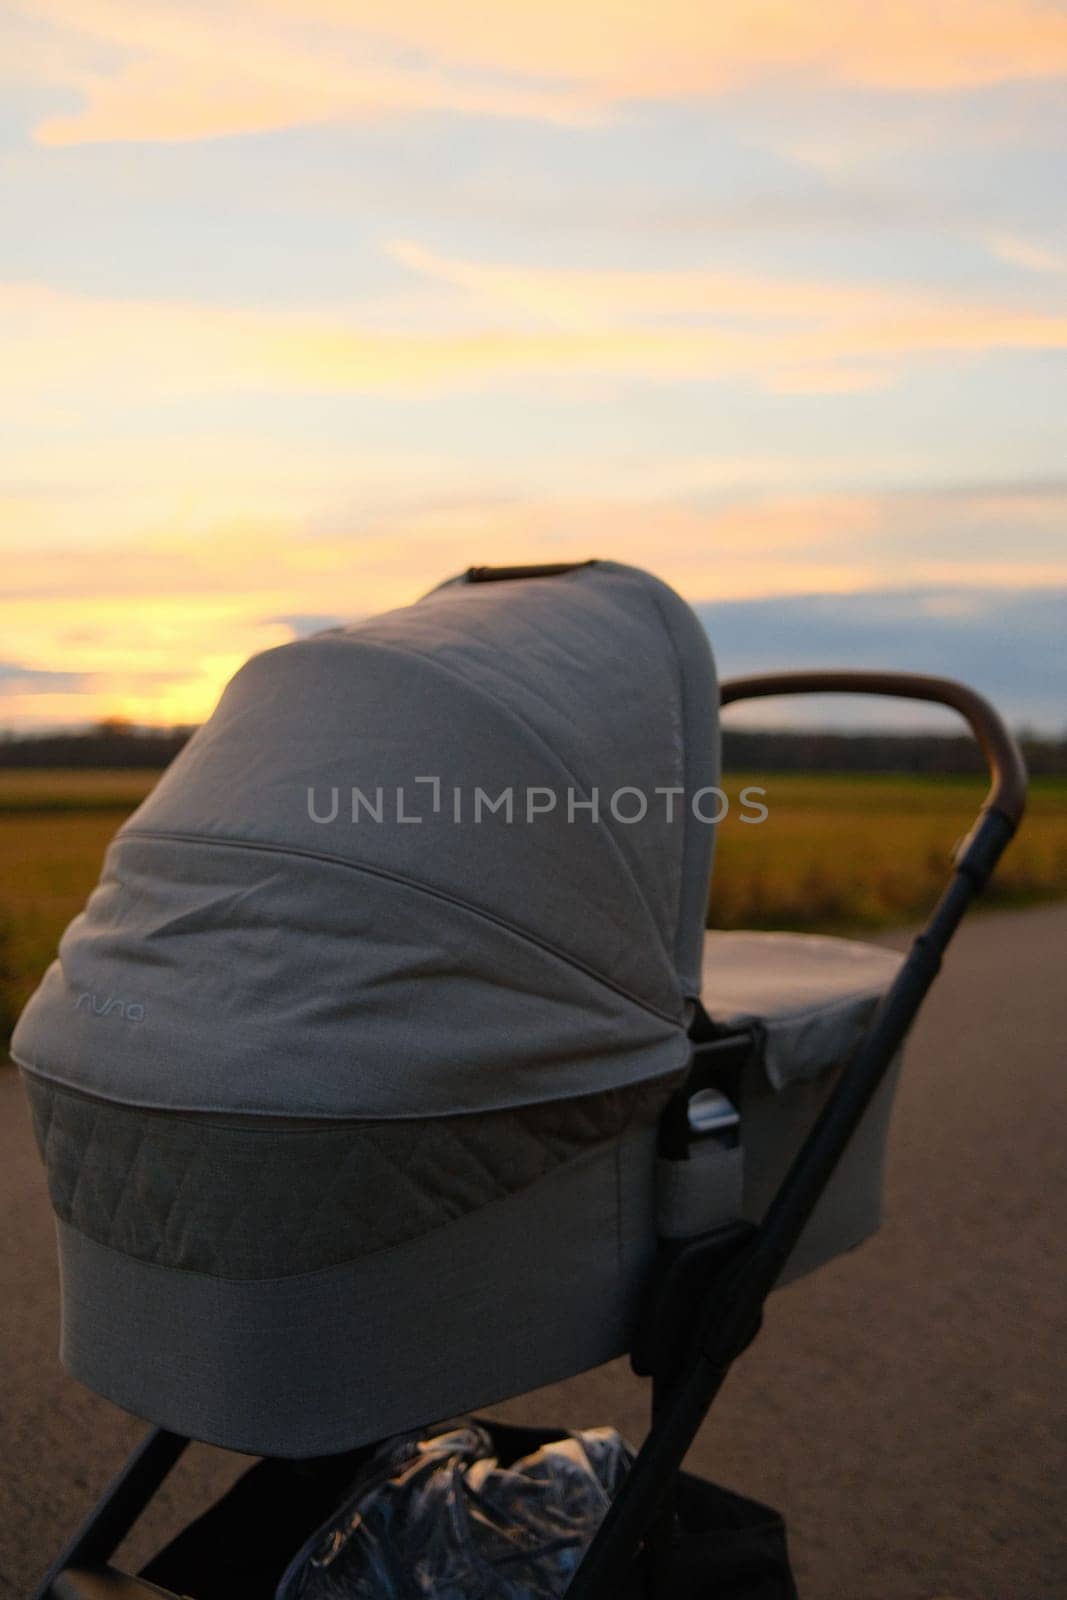 Nuna brand baby stroller near a field against sunset sky by rherrmannde